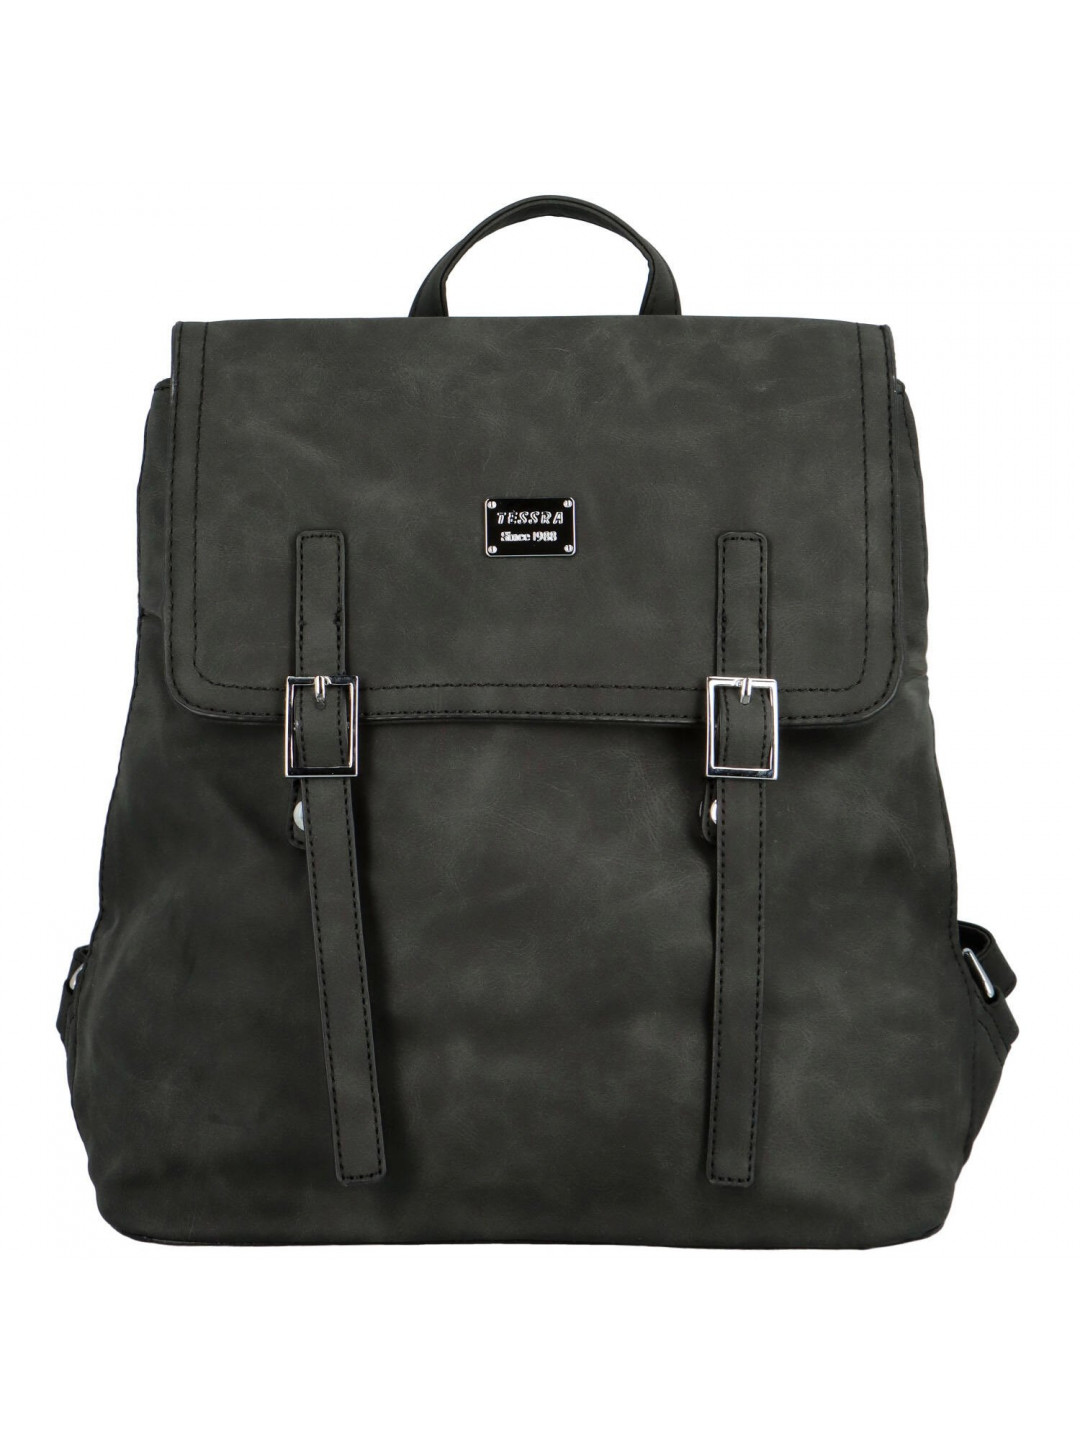 Trendy dámský koženkový kabelko-batoh Erlea černá